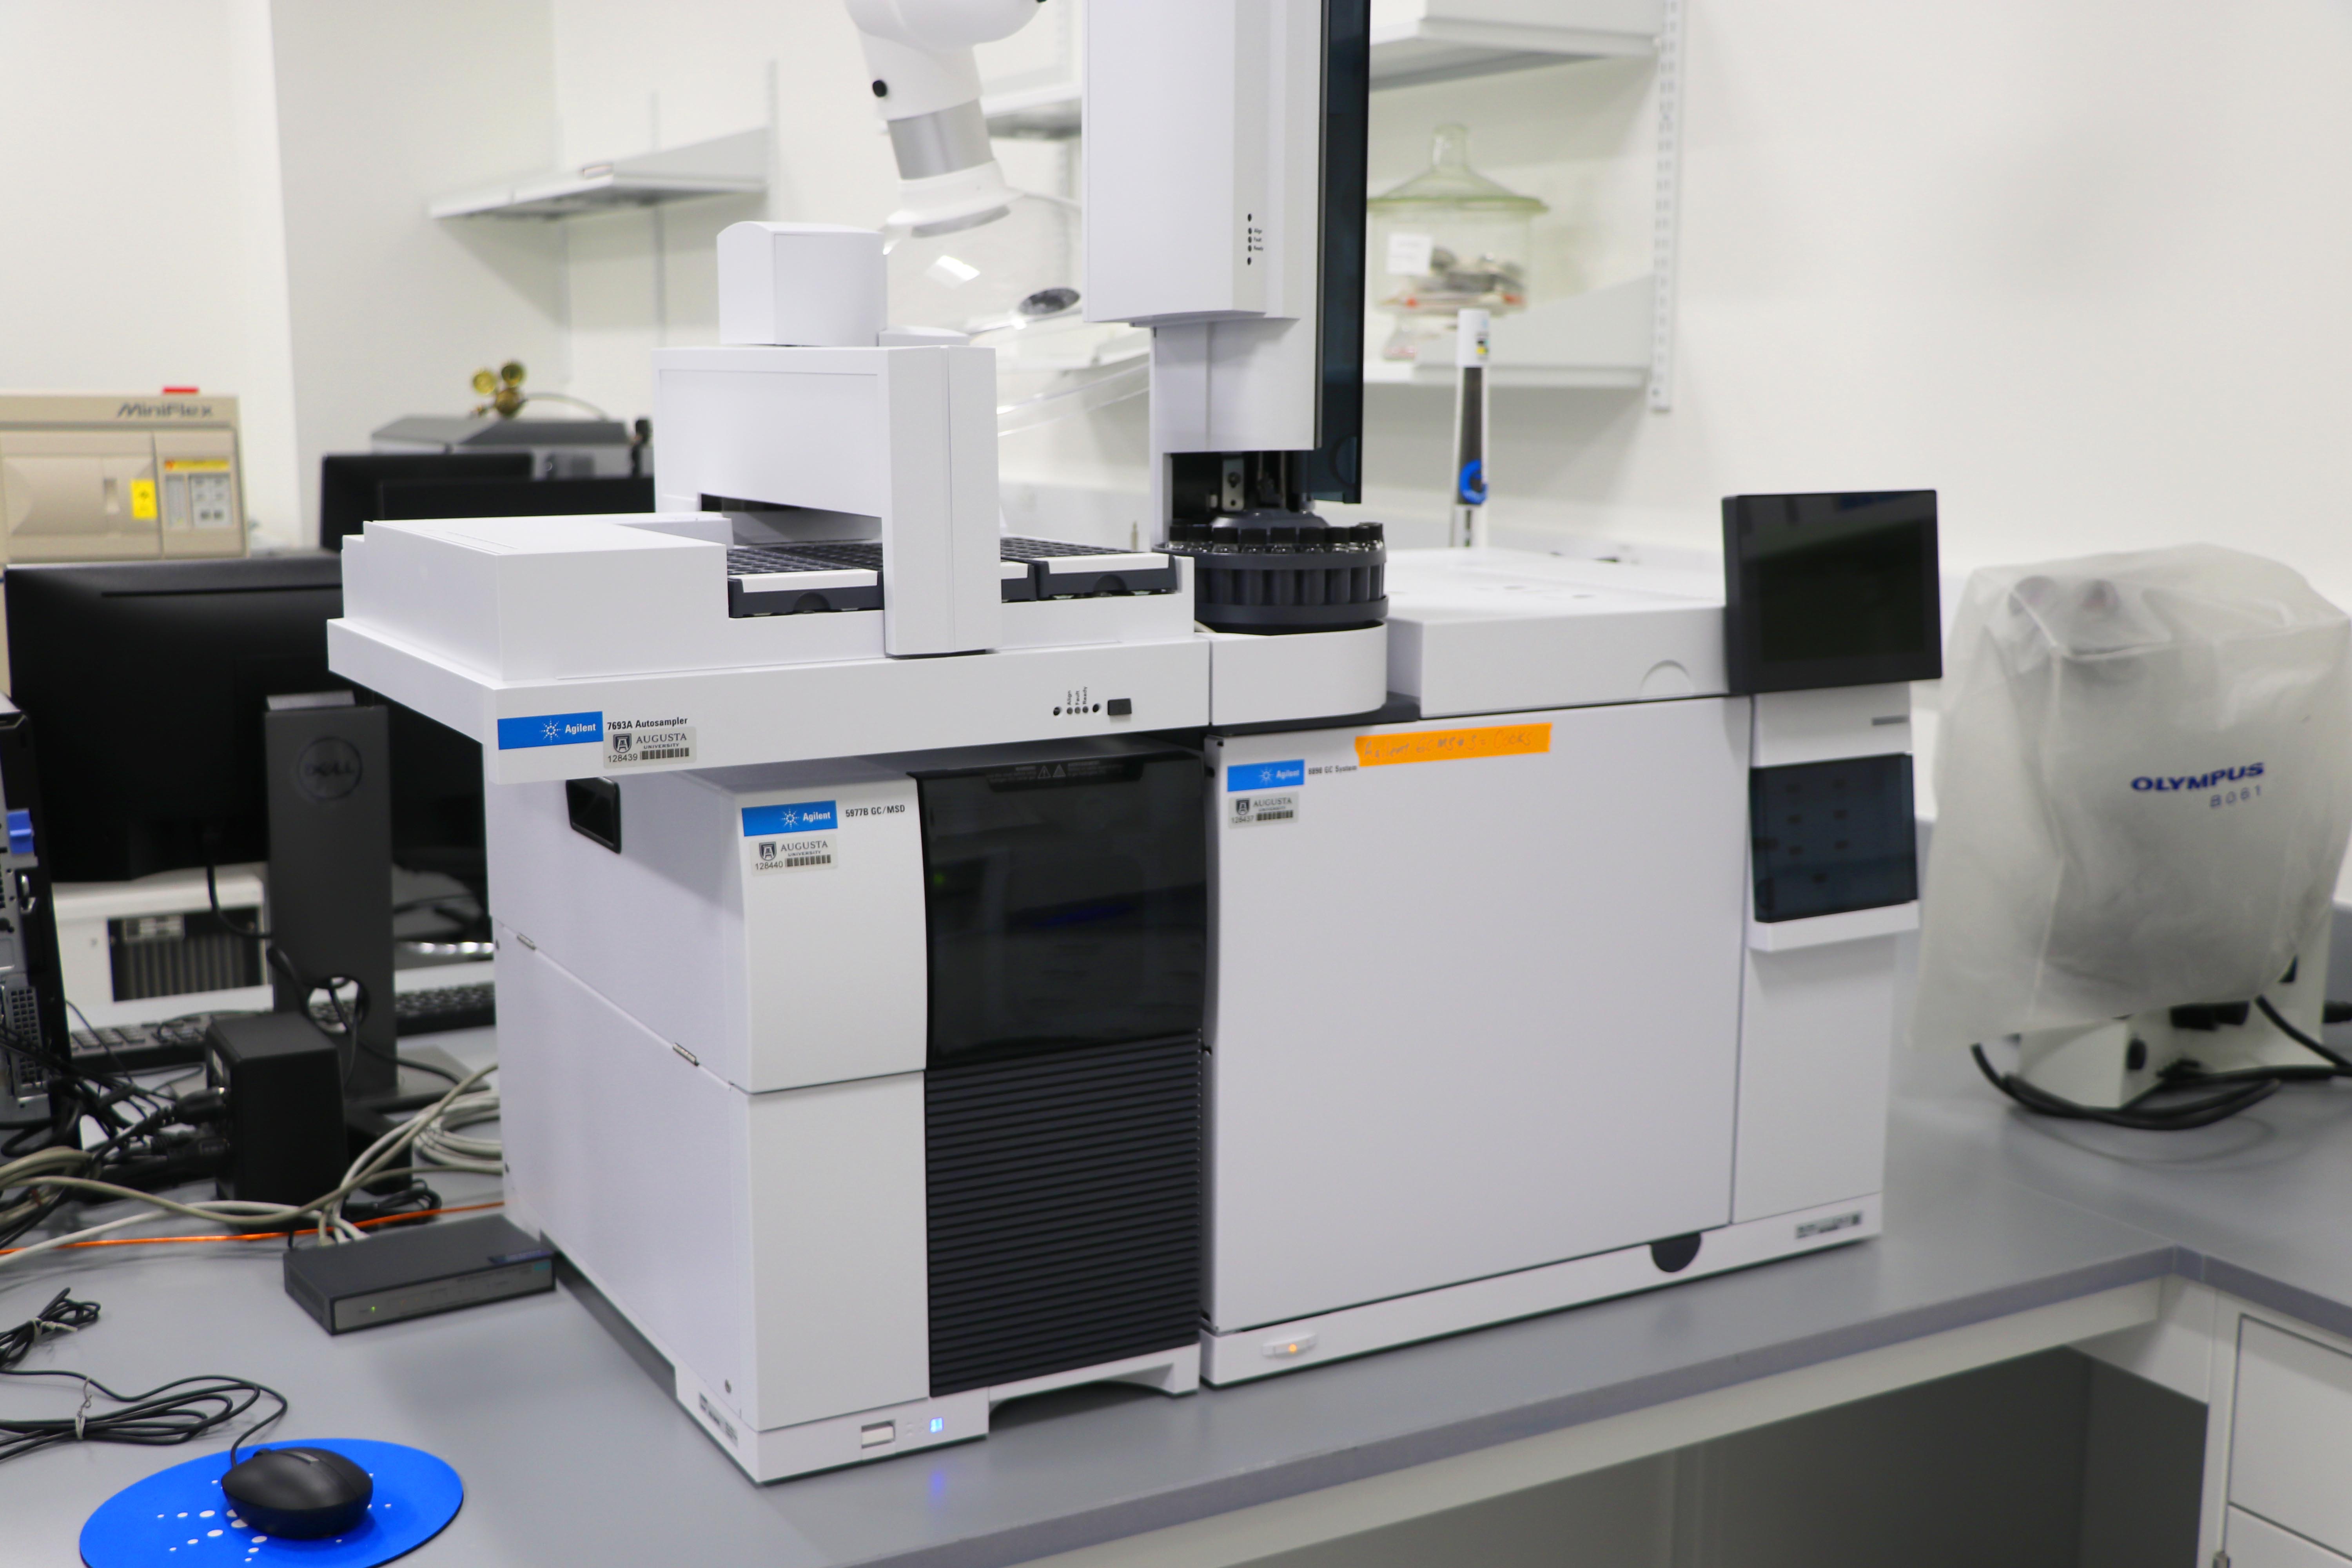 Gas chromatography-mass spectrometry